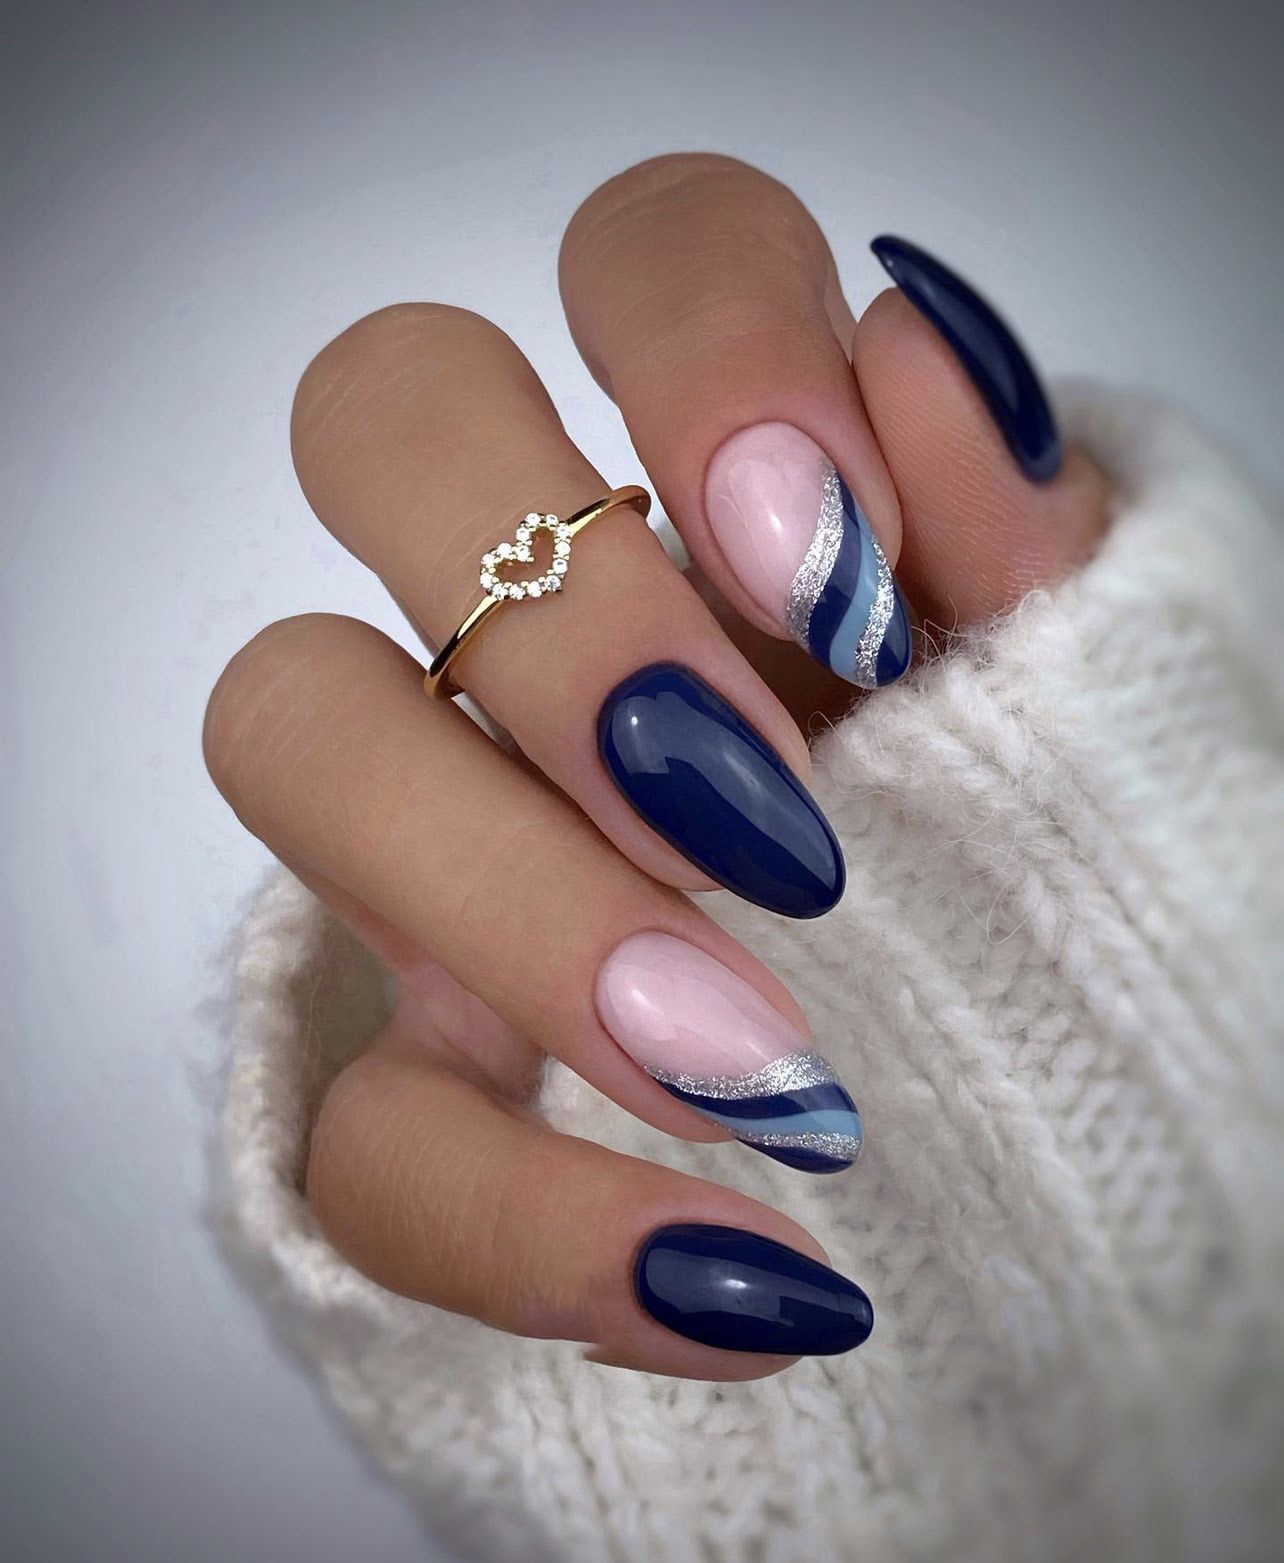 Sơn Gel màu xanh coban, Tone màu xanh chọn lọc làm đẹp ngành nail |  Lazada.vn